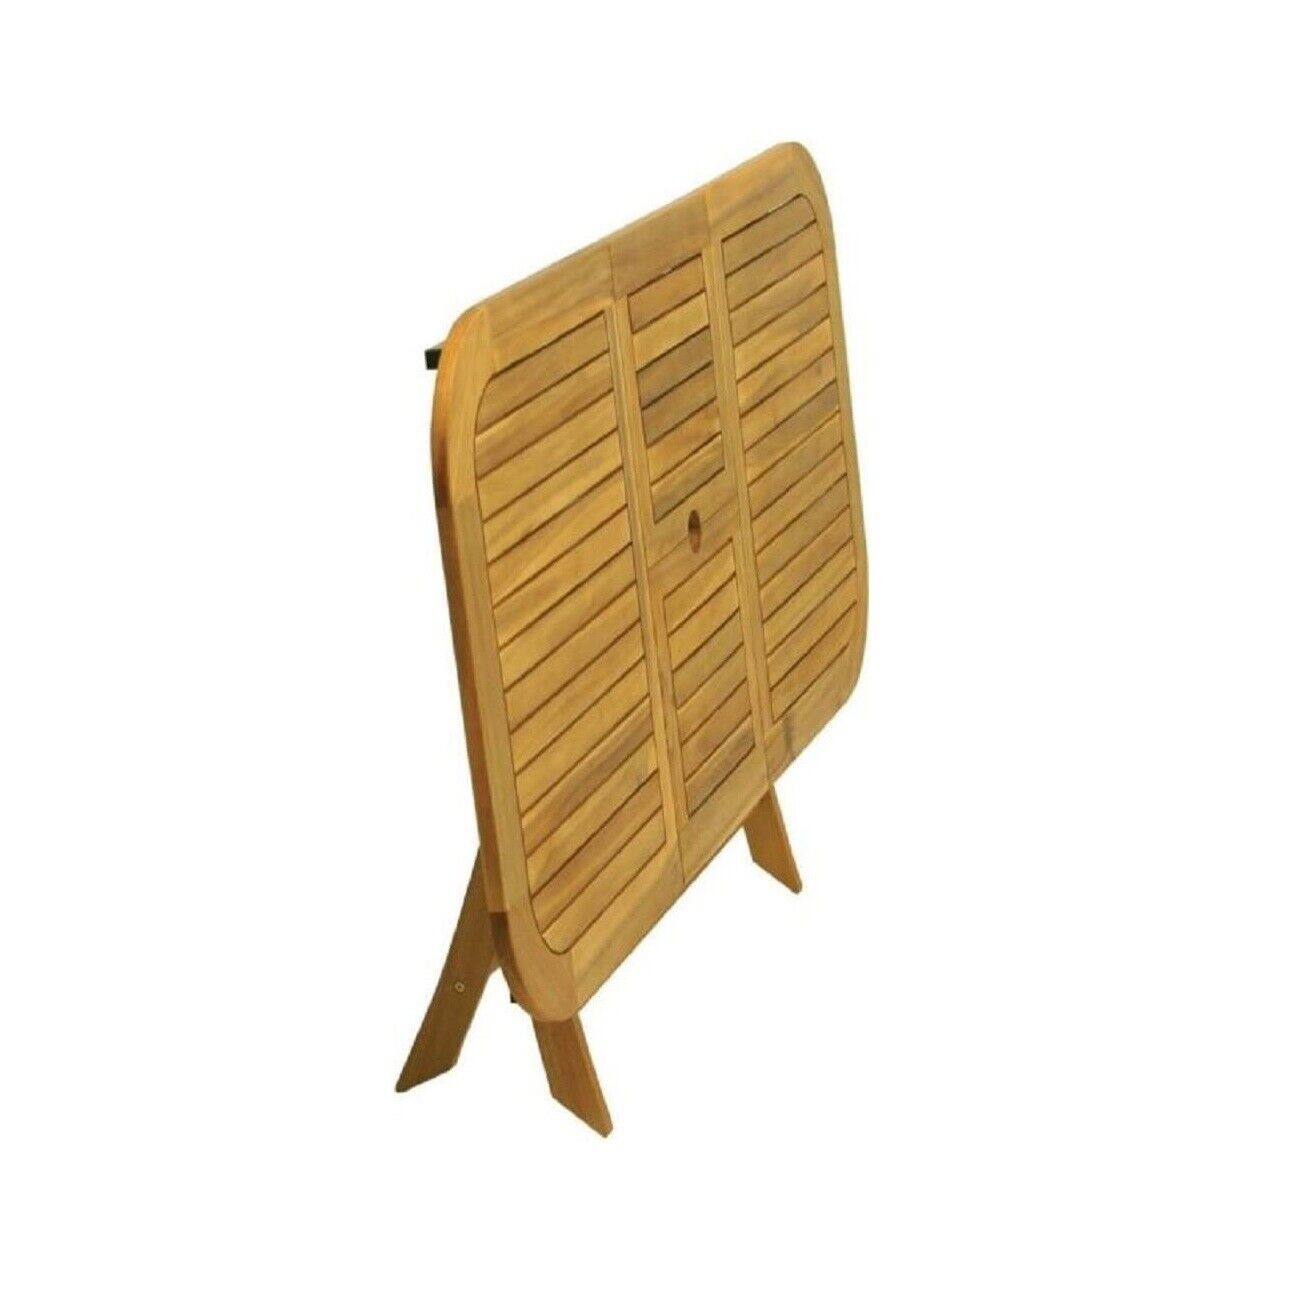 Tavolo da pranzo rettangolare pieghevole in legno di teak (120x70